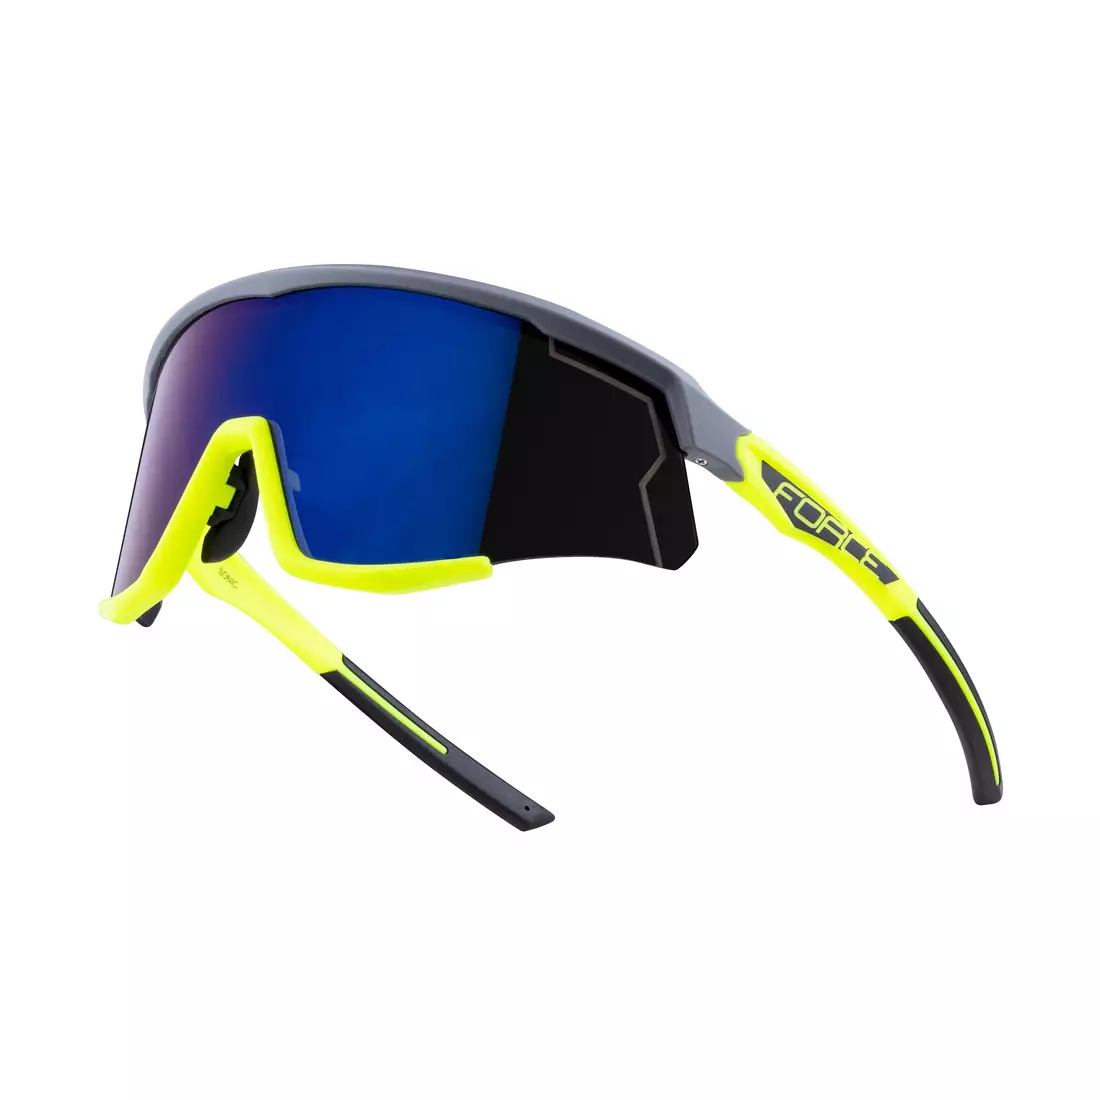 FORCE kerékpáros / sport szemüveg SONIC, szürke-fluo, 910954